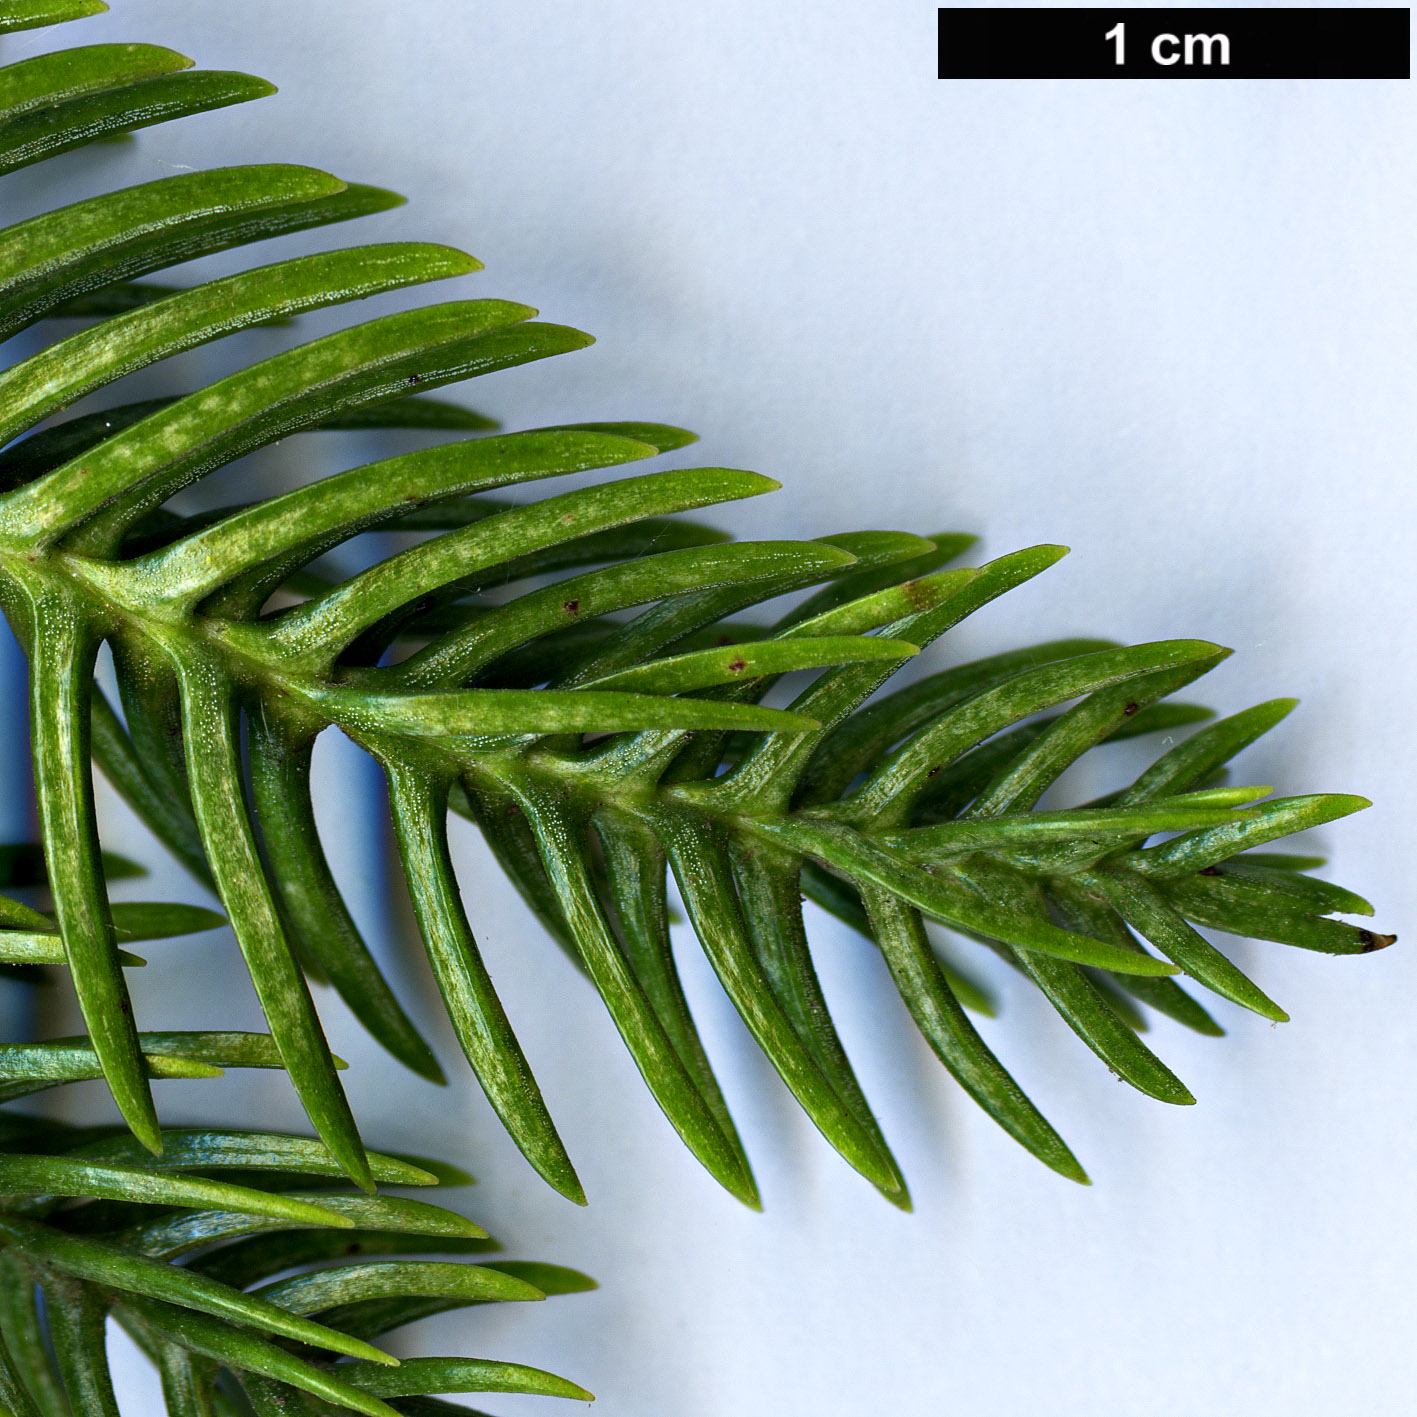 High resolution image: Family: Araucariaceae - Genus: Araucaria - Taxon: schmidii